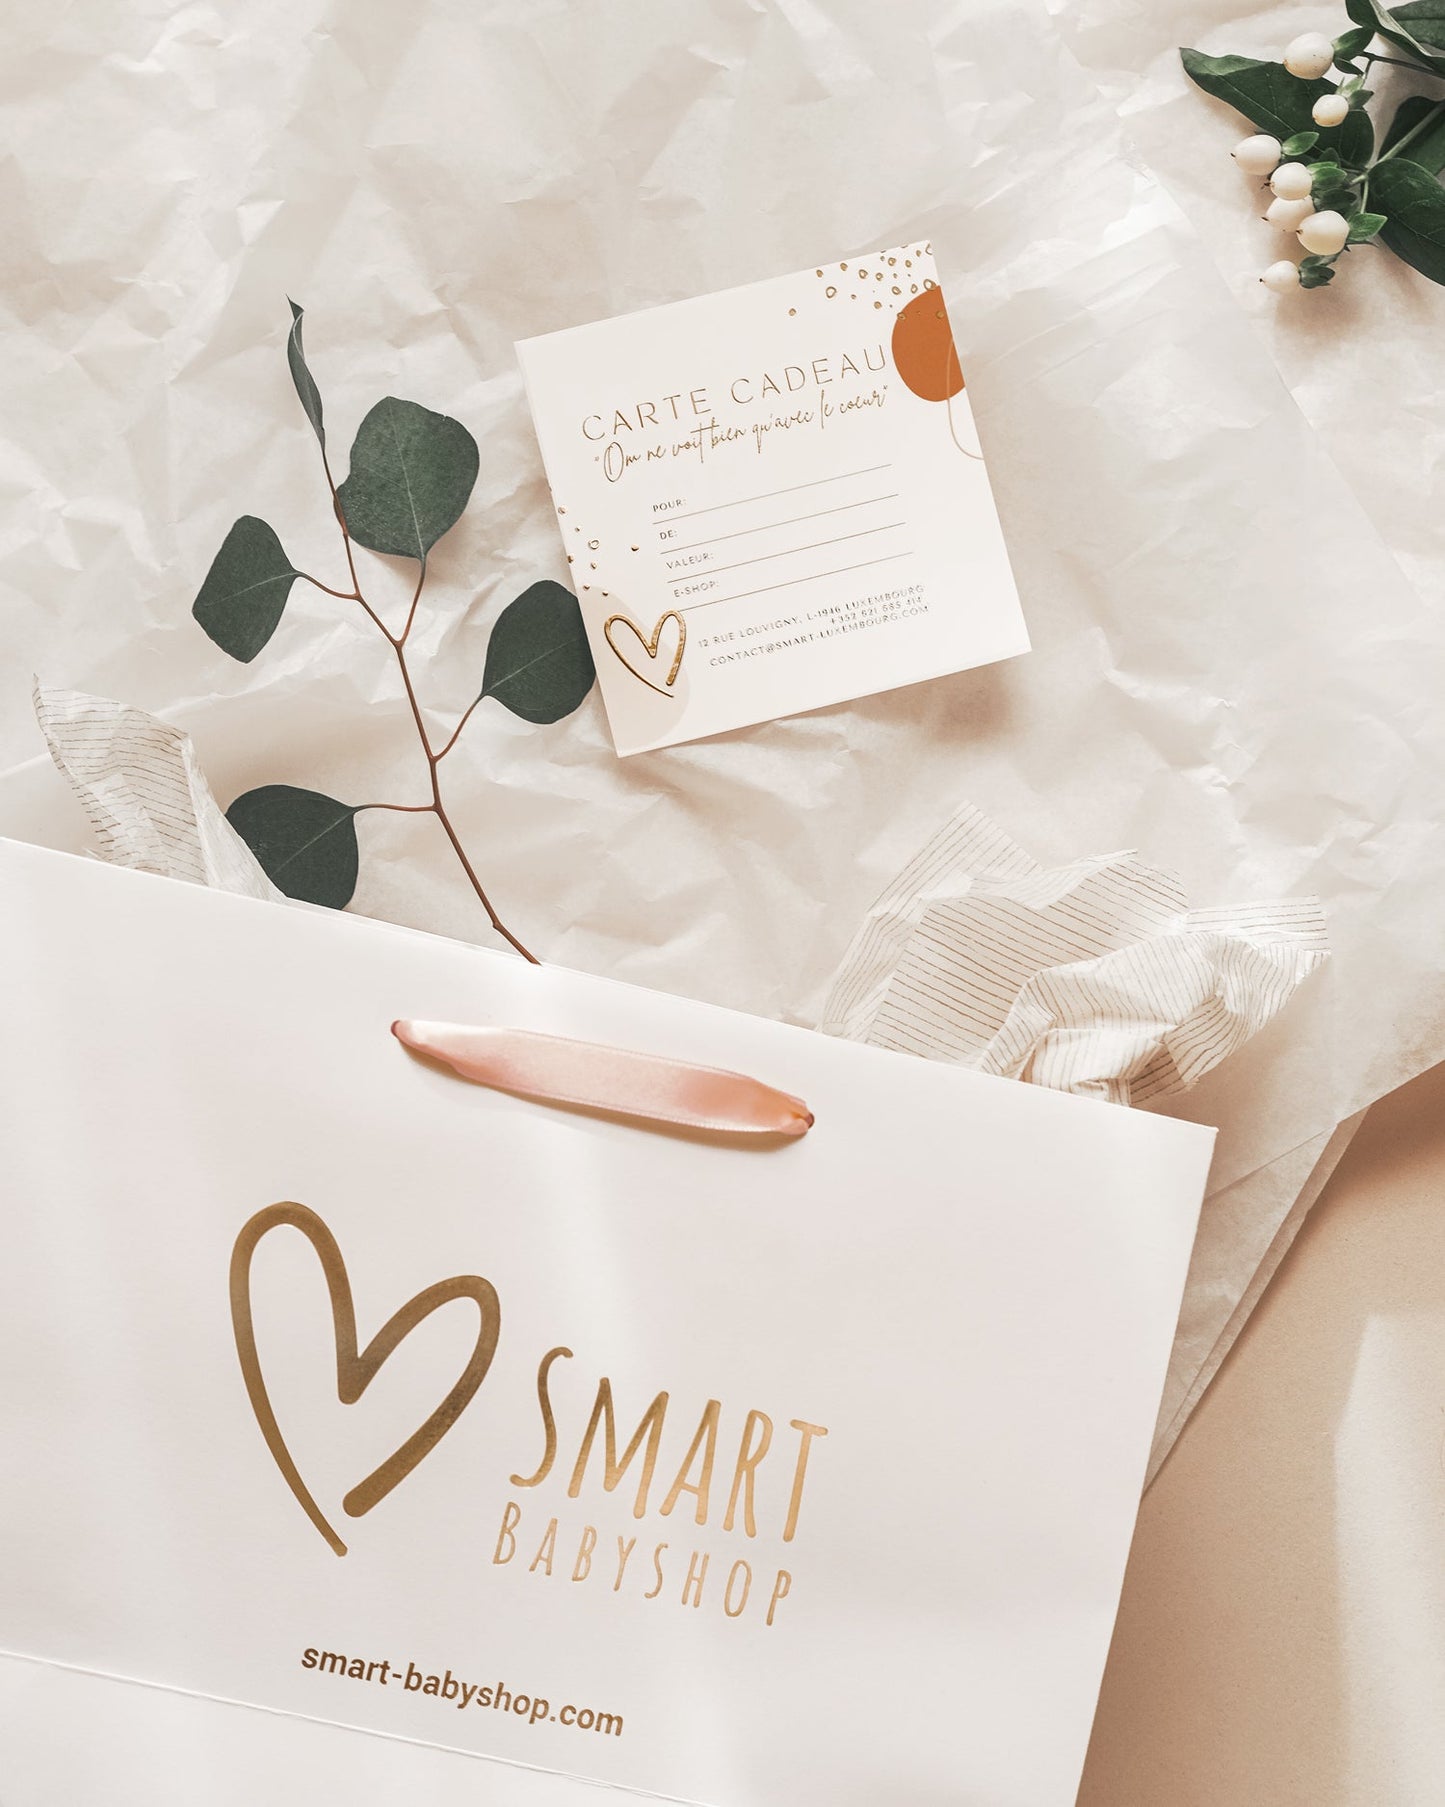 Carte cadeau Smart Babyshop - SMART Babyshop - SMART Babyshop